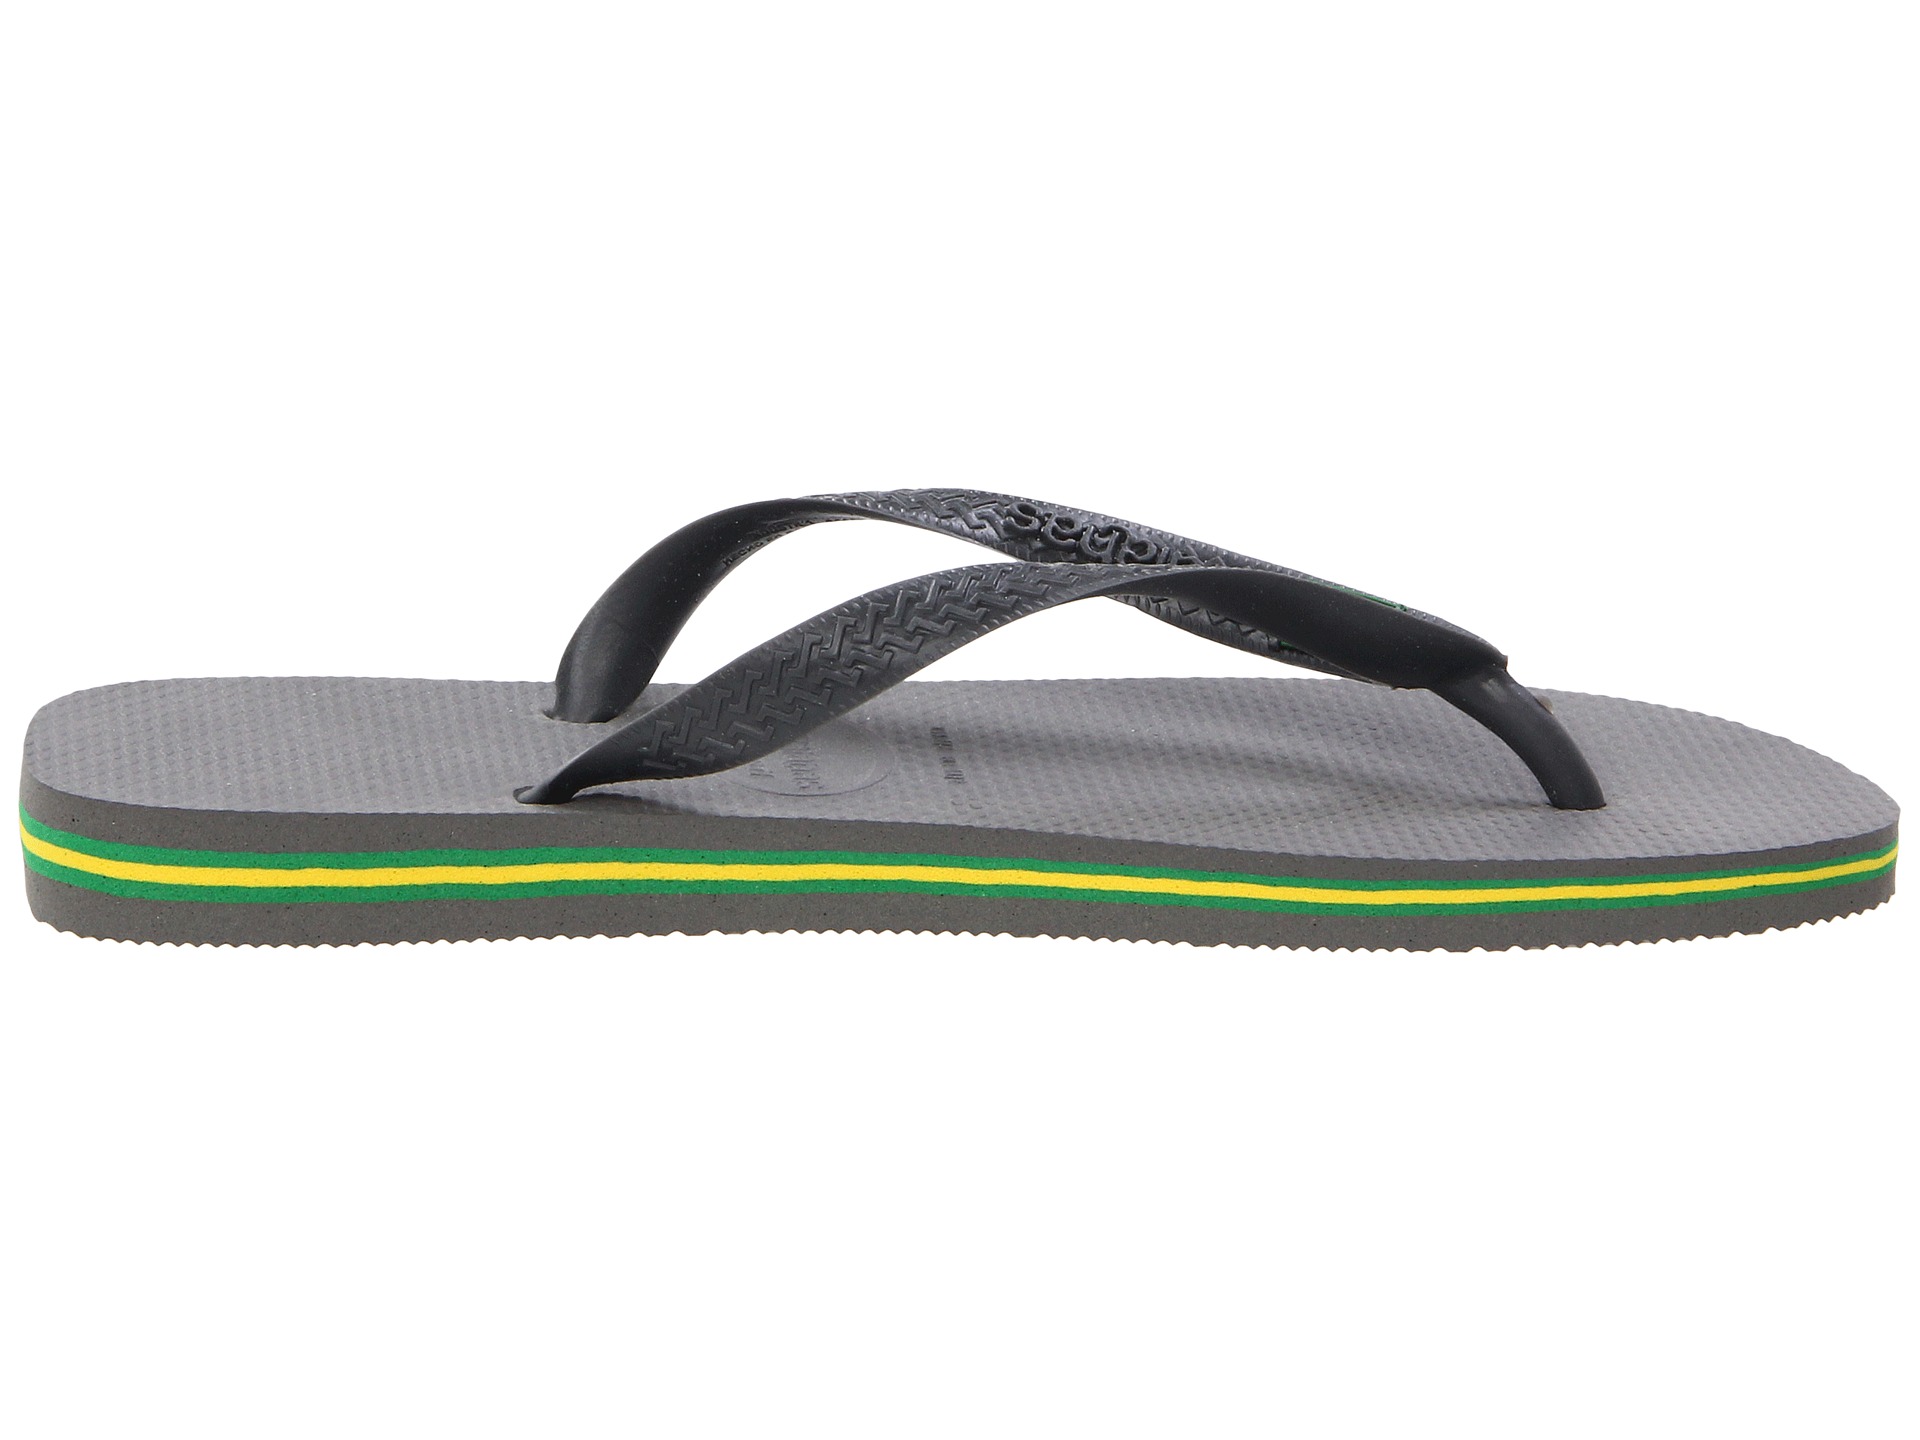 flip flops brasil grey write review gray brazilian flip flops by ...